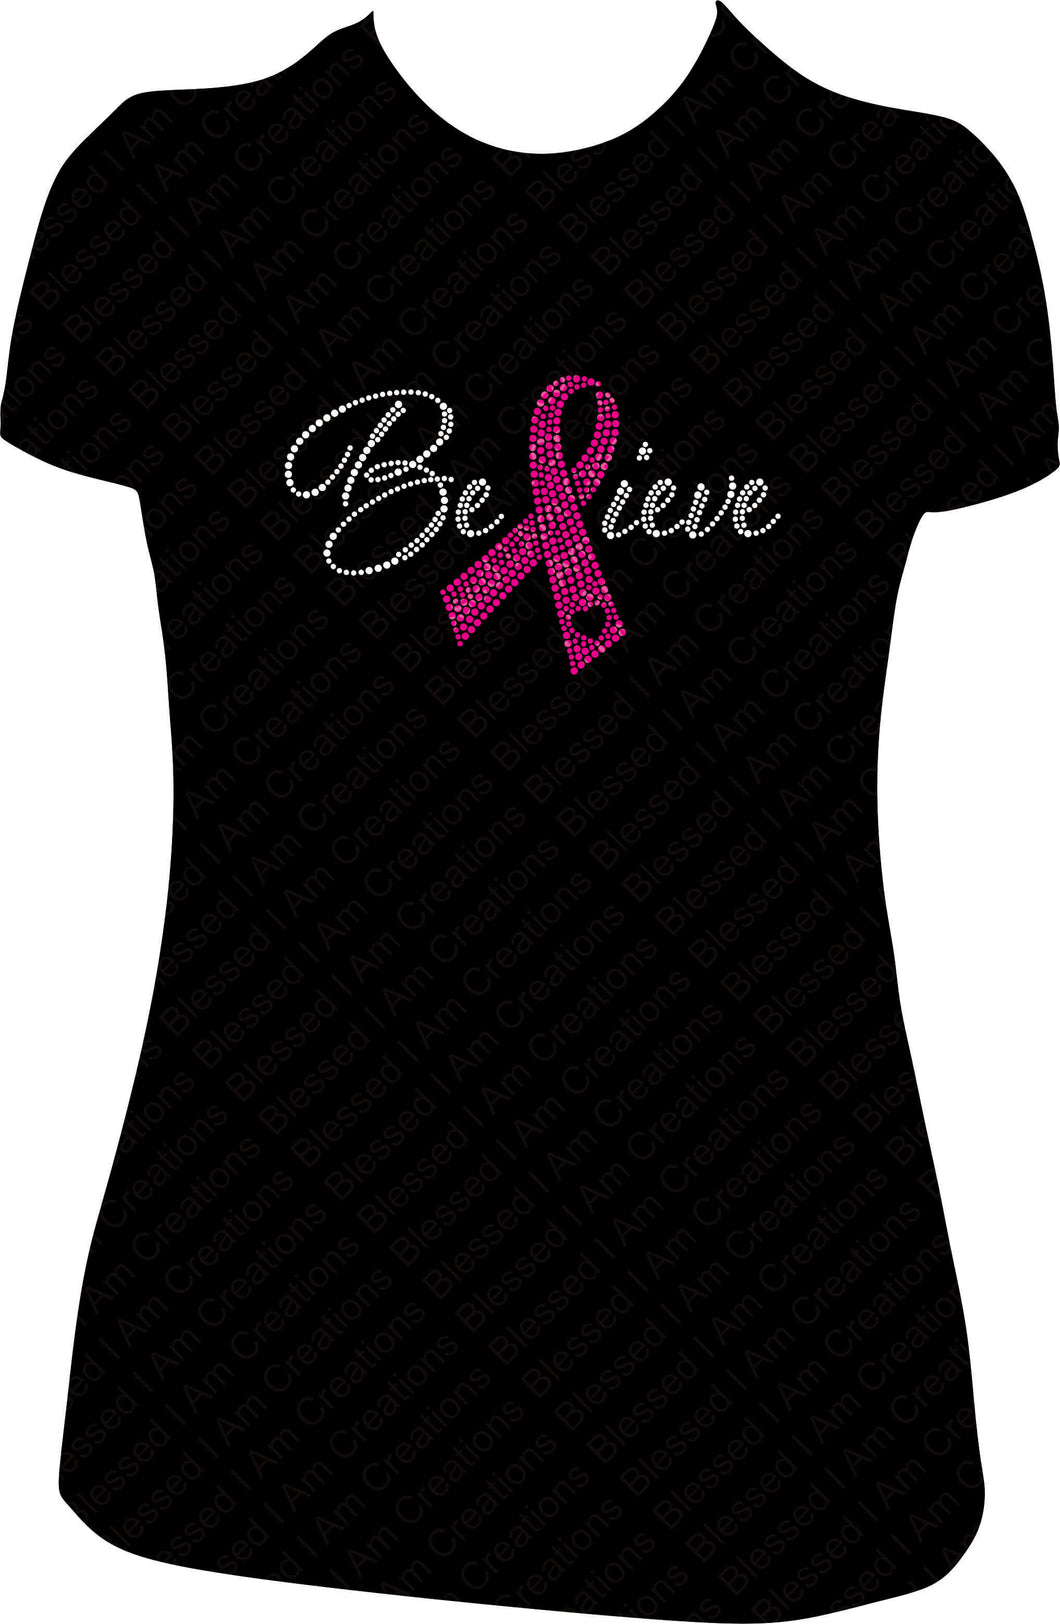 Believe Cancer Awareness Shirt